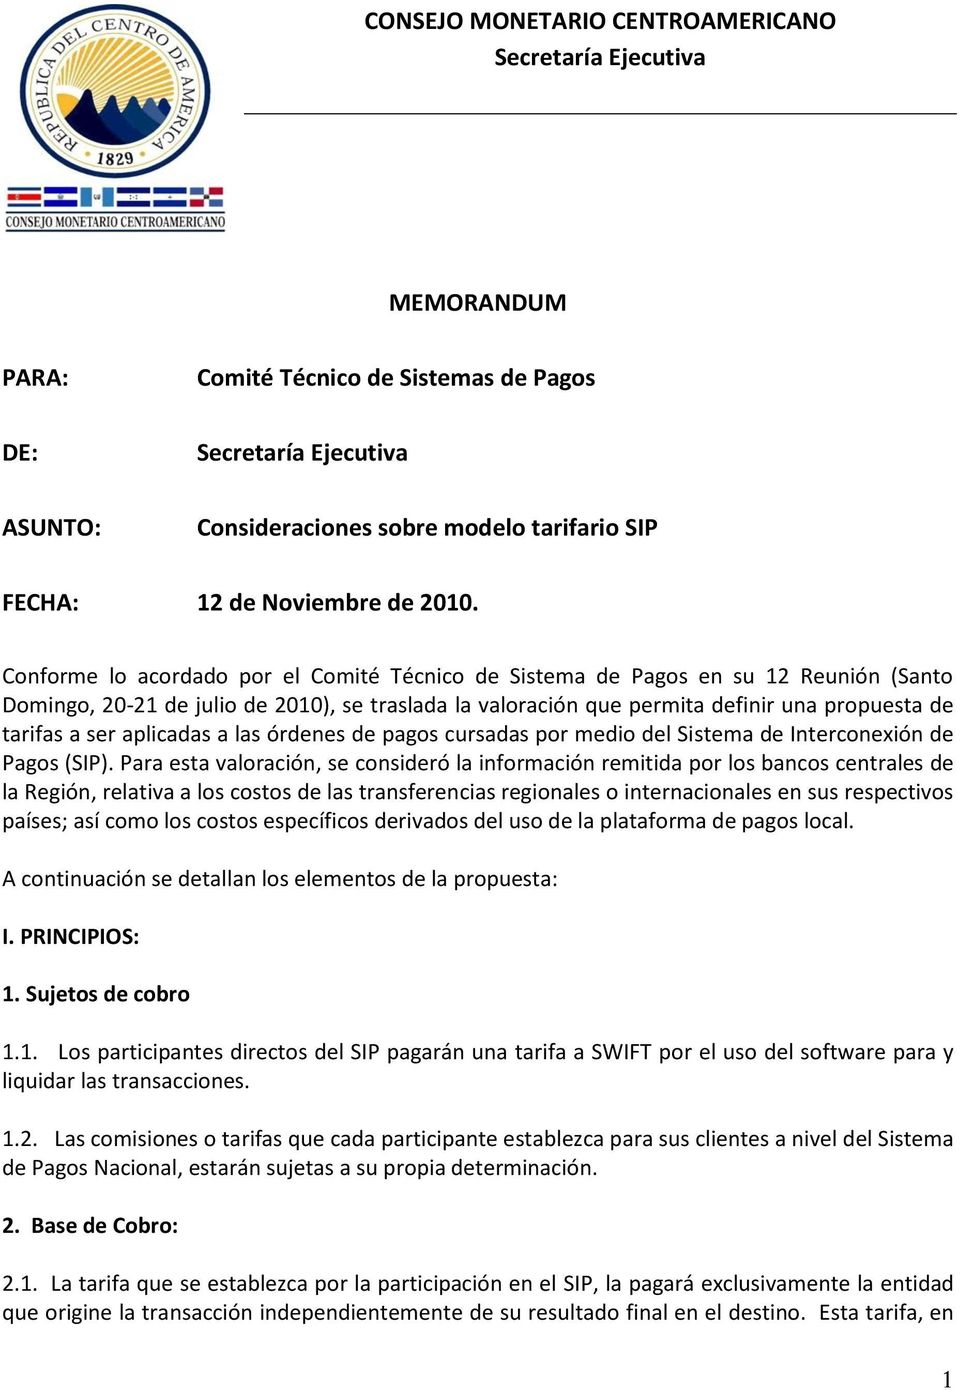 Conforme lo acordado por el Comité Técnico de Sistema de Pagos en su 12 Reunión (Santo Domingo, 20-21 de julio de 2010), se traslada la valoración que permita definir una propuesta de tarifas a ser